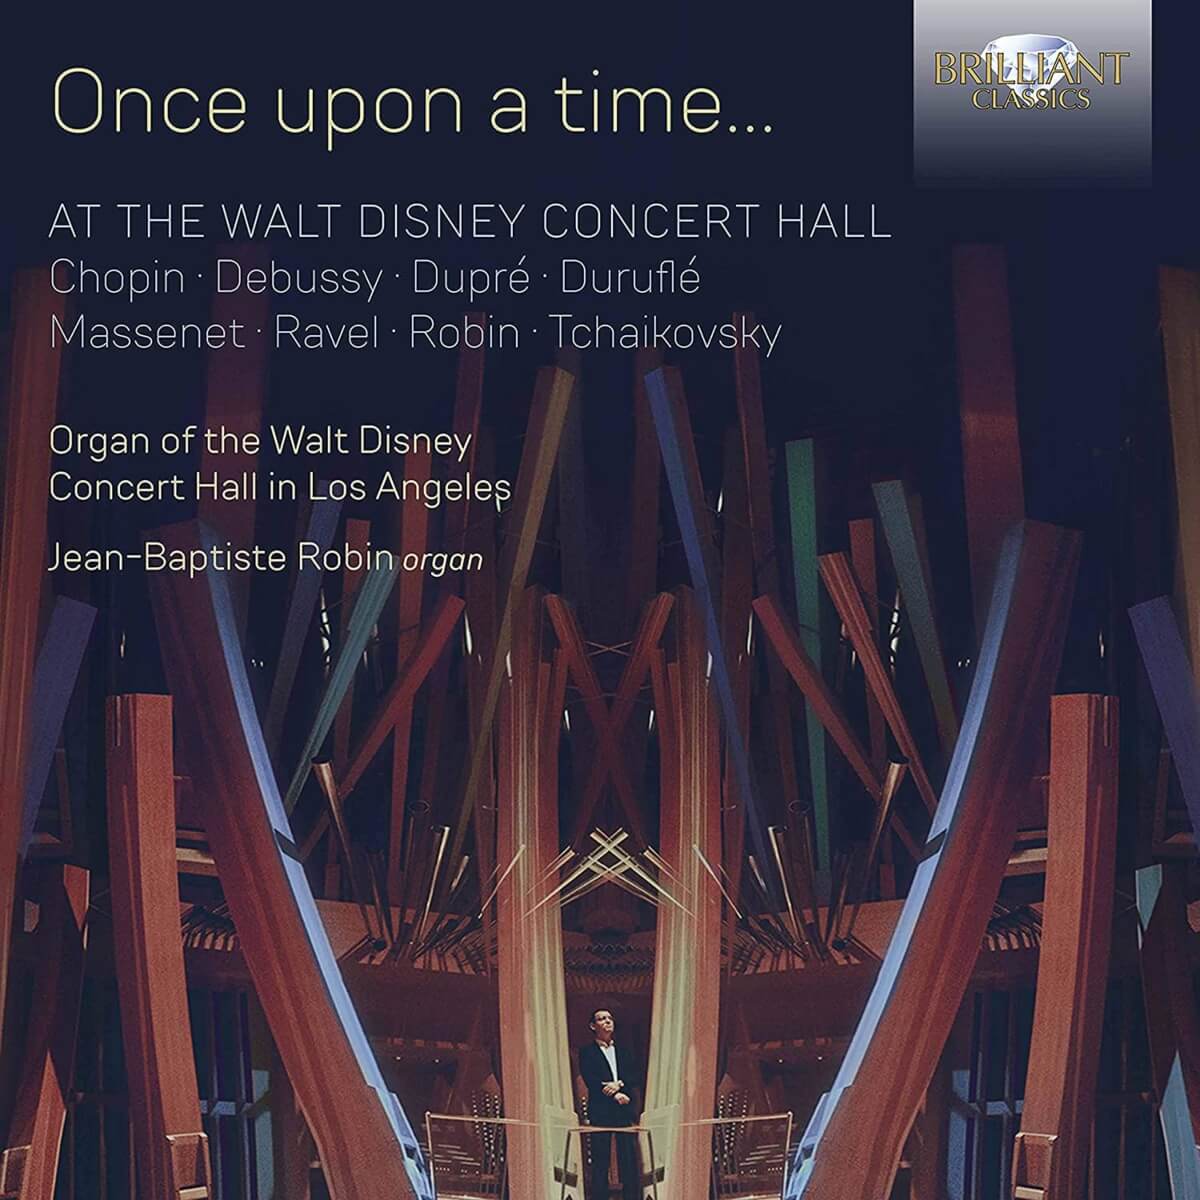 couverture de l'album Once Upon A Time de l'organiste Jean-Baptiste Robin